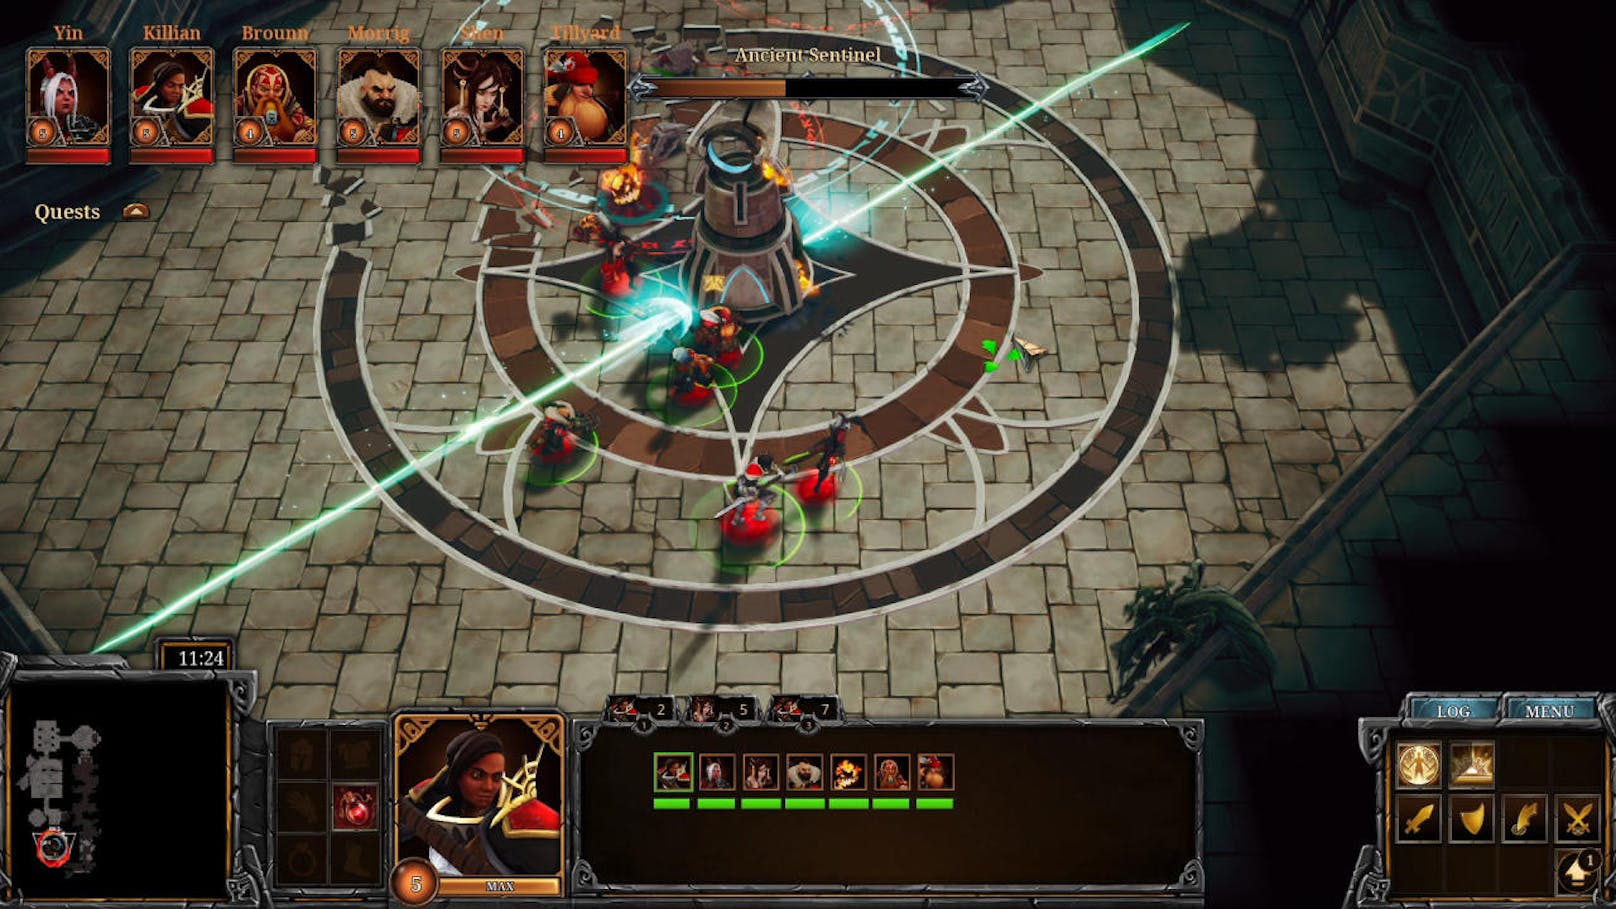 Der Spieler selbst kann drei Fraktionen erleben: das Haus Rupah, das Rastlose Regiment und das Wilde Banner. Alle verfügen über eigene Einheiten, Fähigkeiten und Skill-Trees.